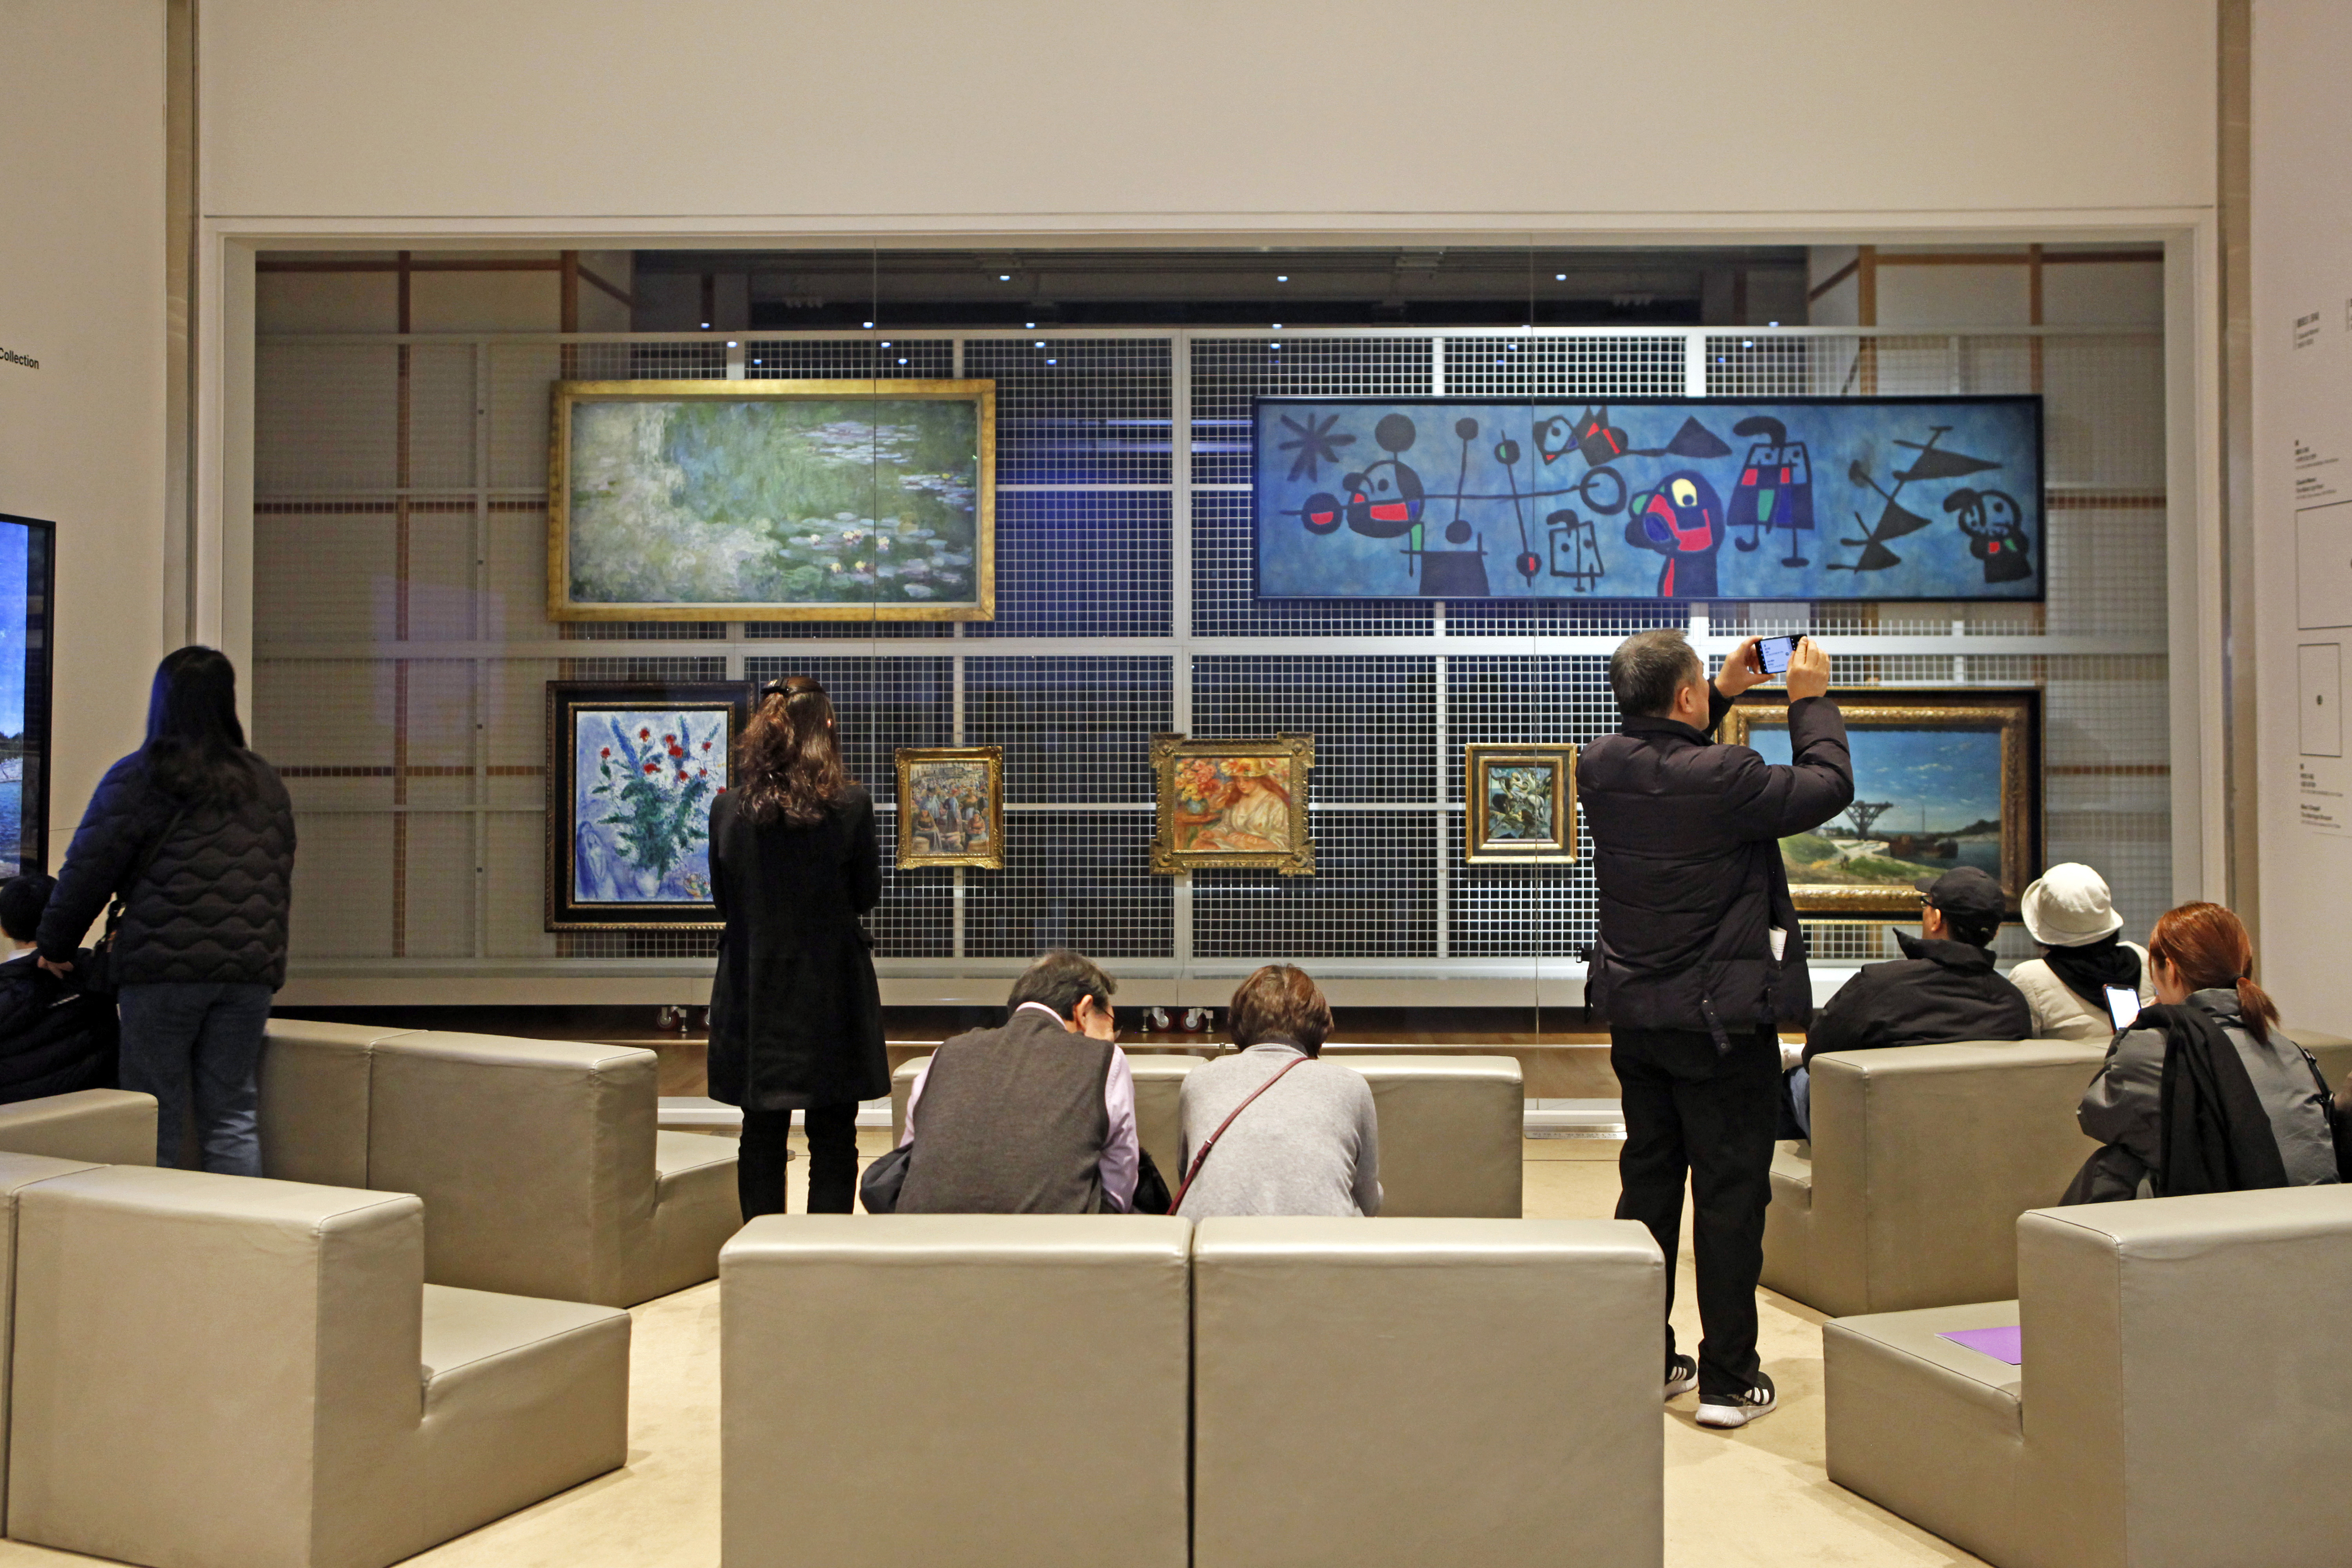 국립현대미술관 청주의 ‘보이는 수장고’. 세계적 거장들의 작품을 하나의 프레임 안에 두고 볼 수 있는, 수장형 미술관의 장점을 잘 활용한 사례다.